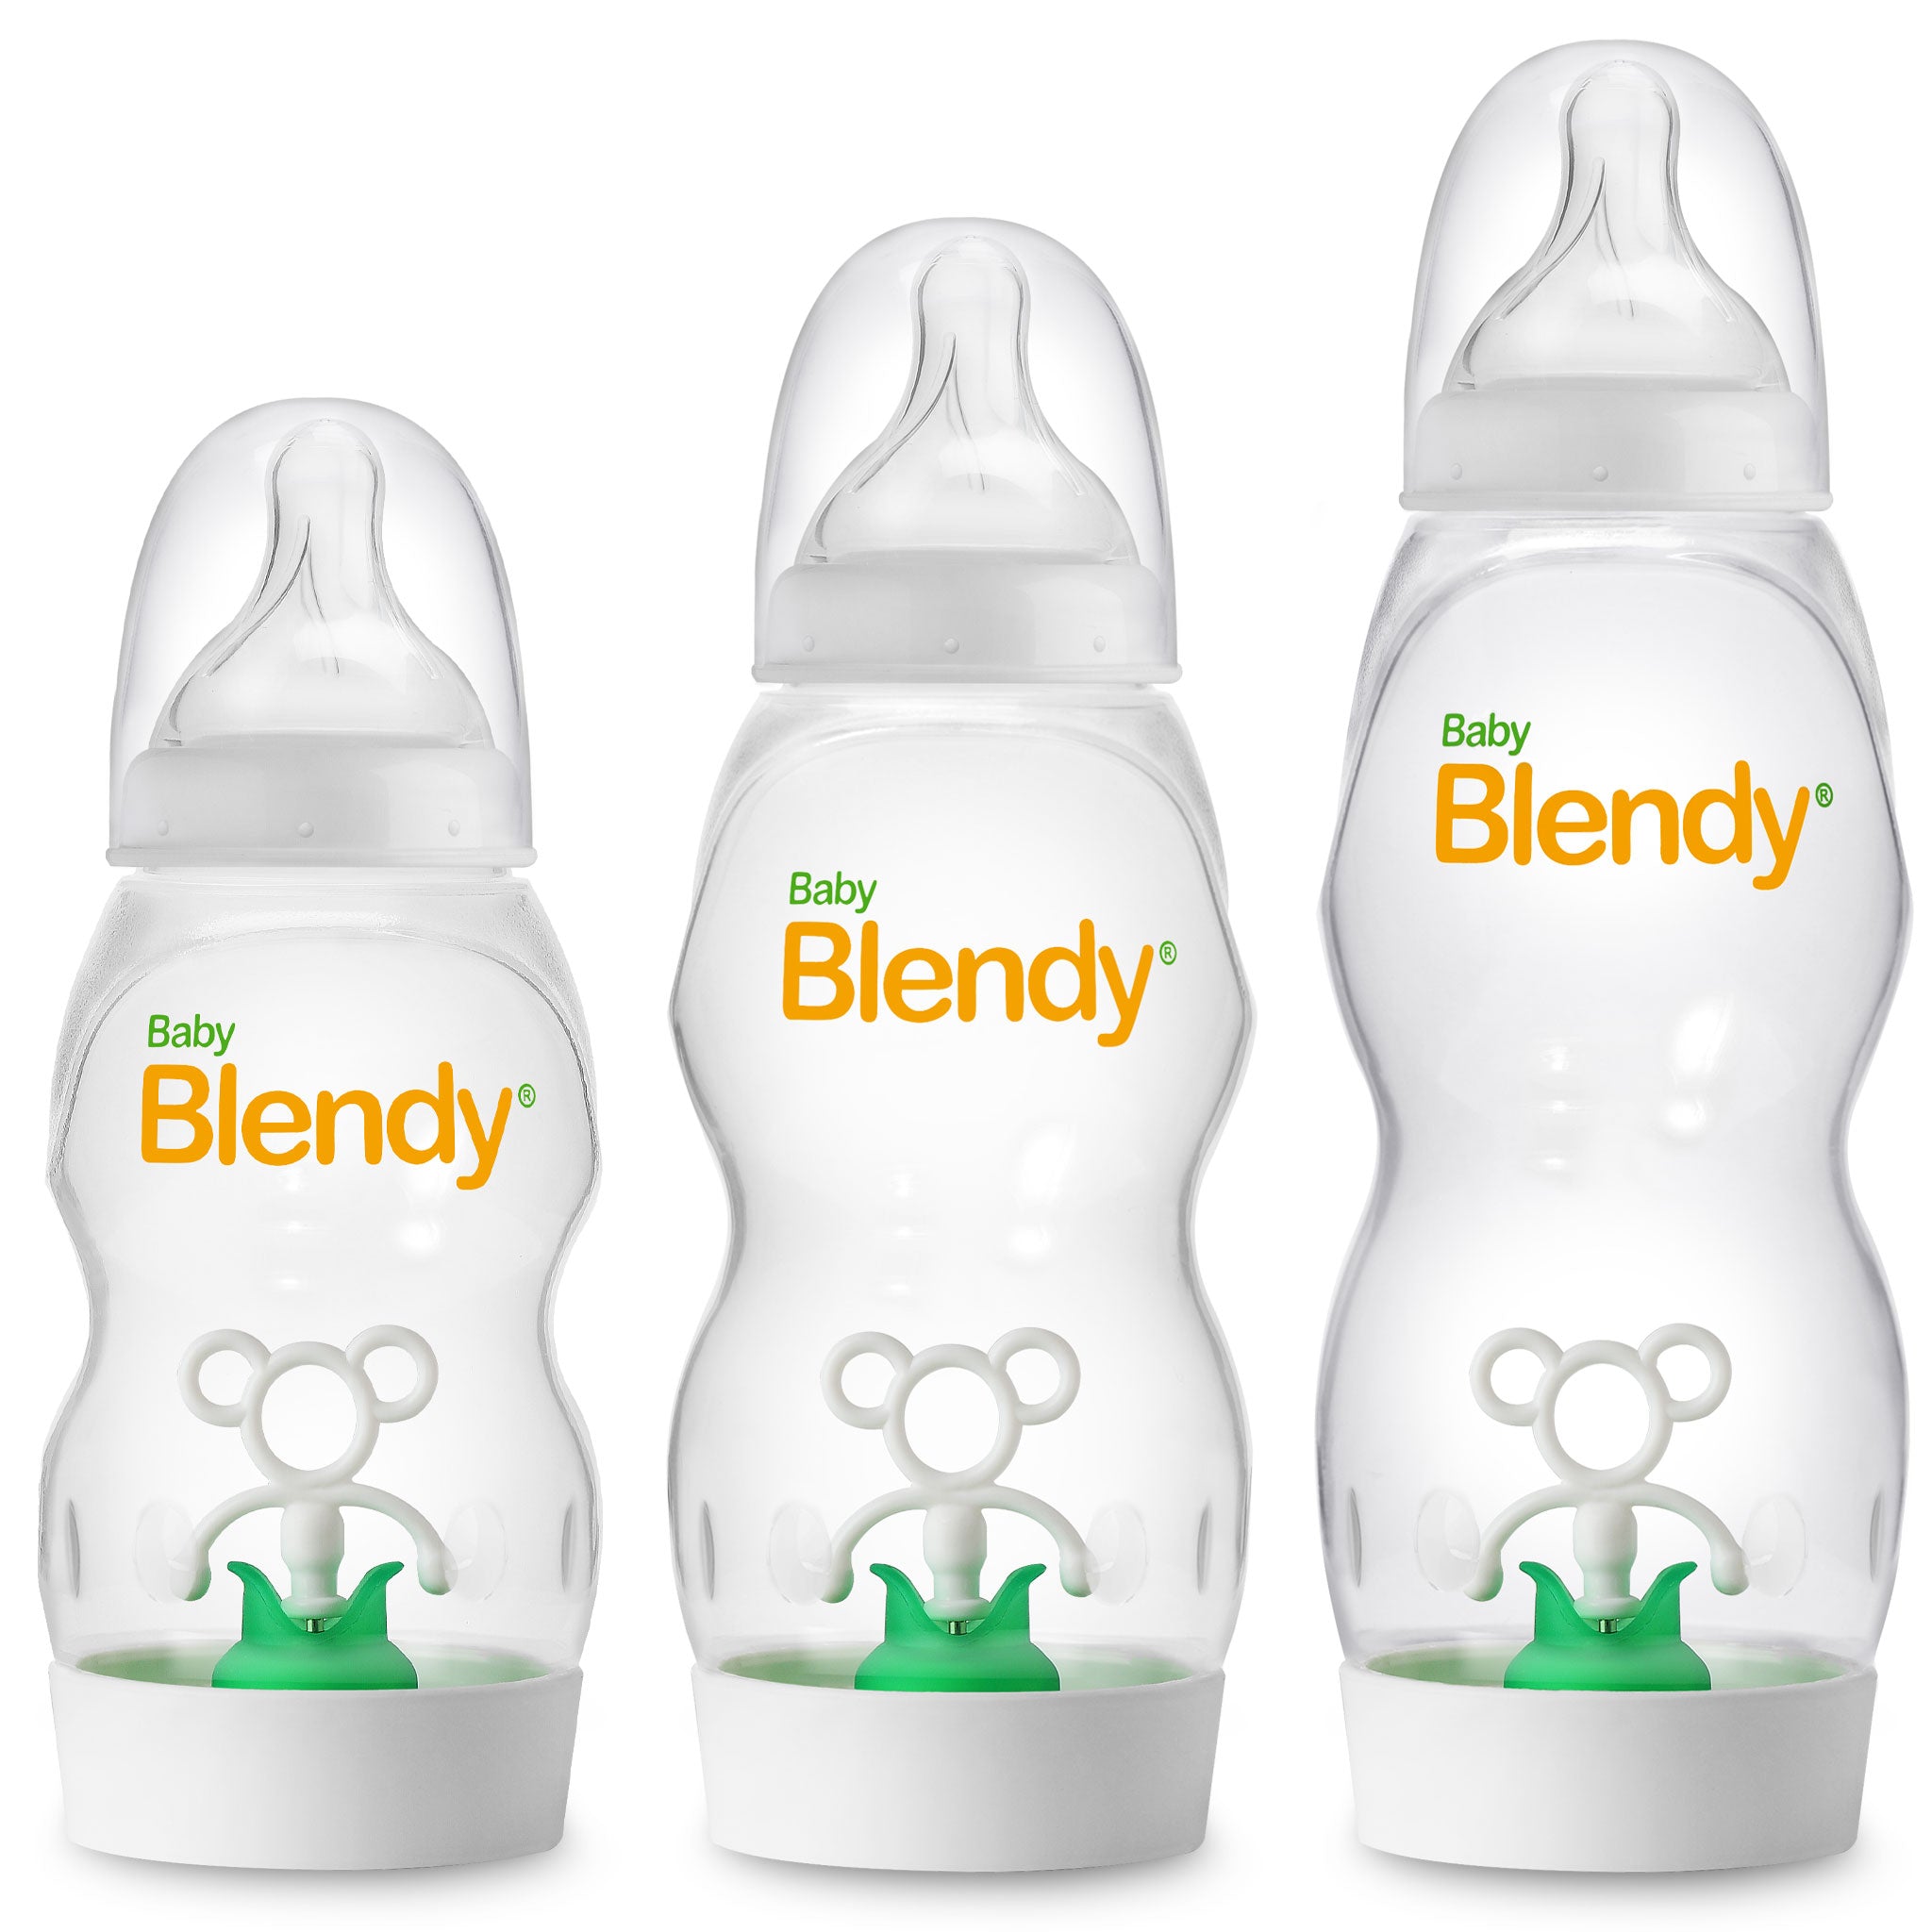 https://babyblendybottles.com/cdn/shop/products/All-Bottles-Side-by-Side-No-Milk-72DPI-1X1.jpg?v=1618602796